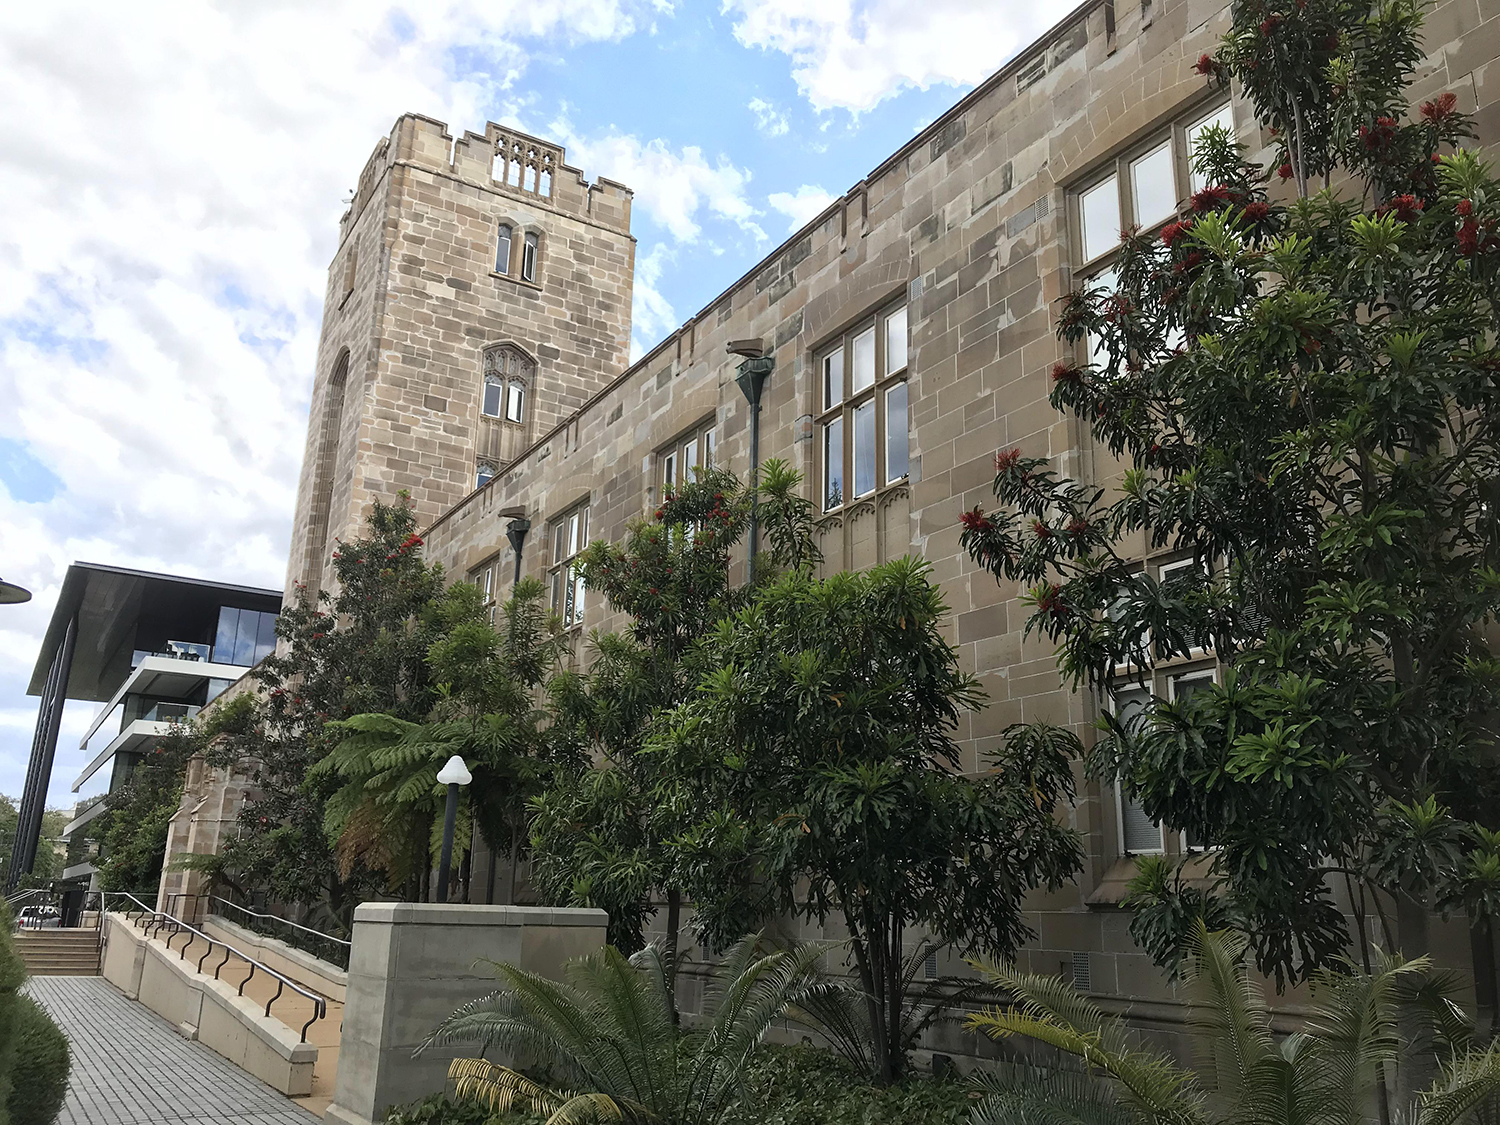 独墅湖科教创新区管委会与江苏省产业技术研究院参访悉尼大学中国中心